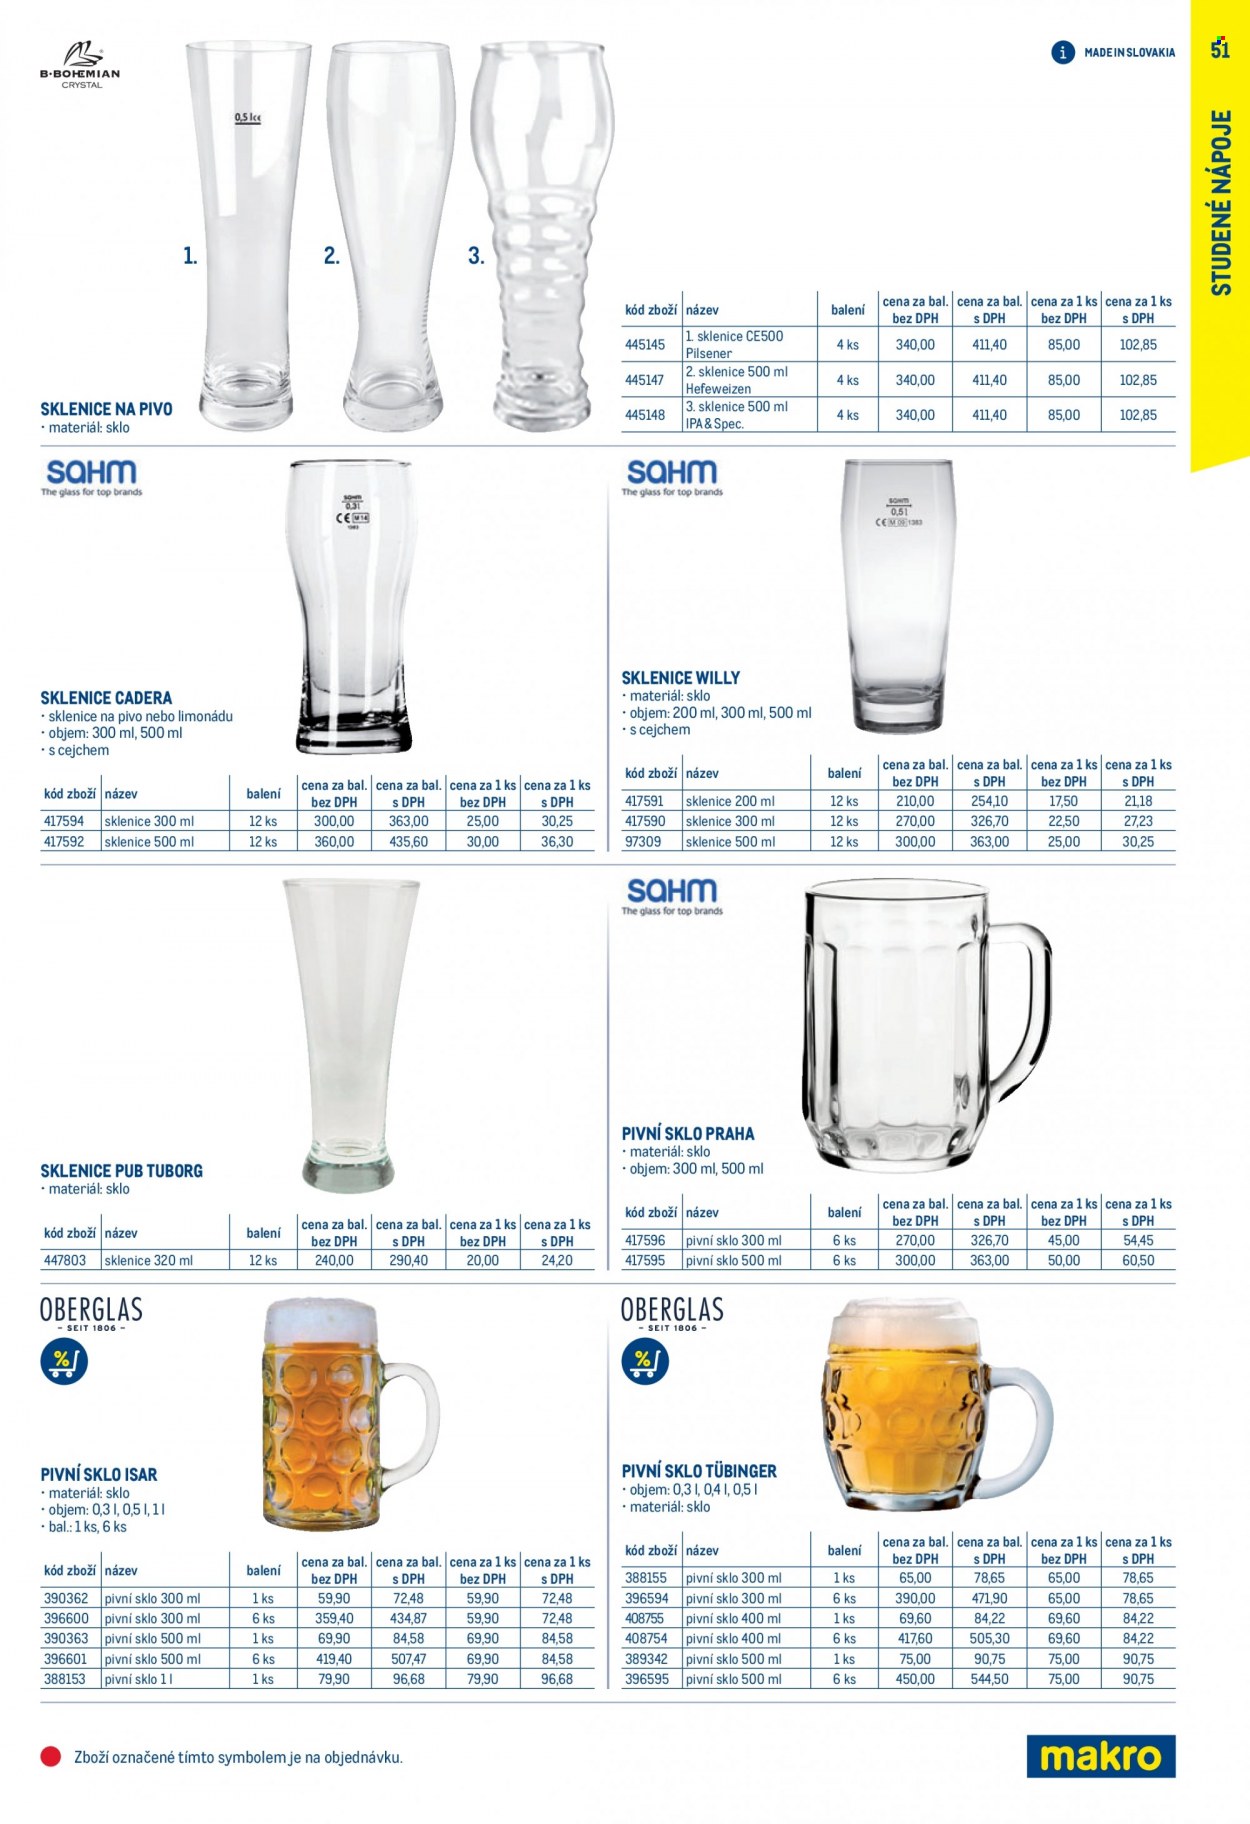 Leták MAKRO - 1.7.2022 - 31.1.2023 - Produkty v akci - india pale ale, pivní sklenice. Strana 51.